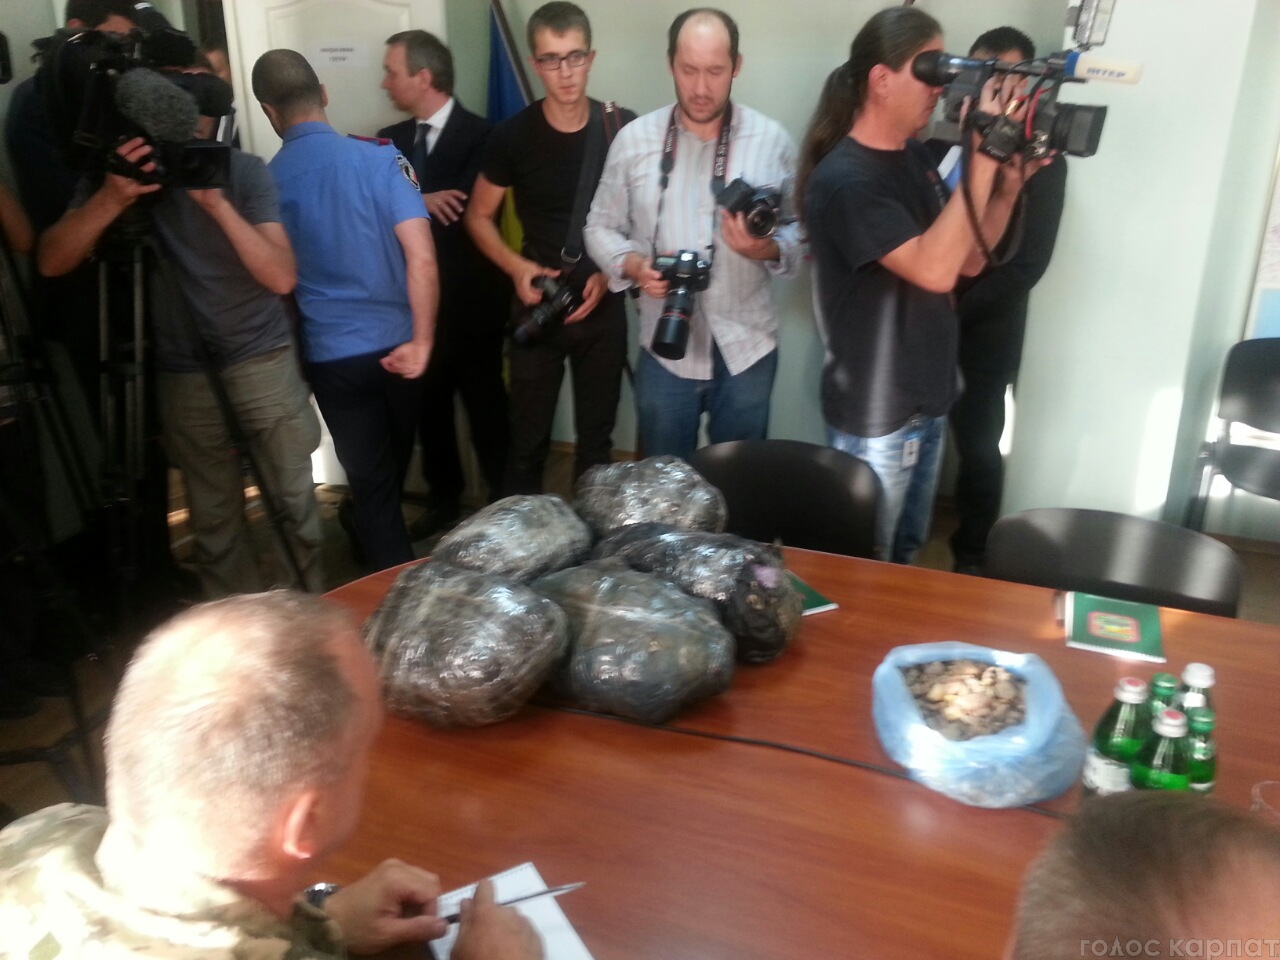 Стоимость партии контрабандного янтаря, который сегодня изъяли закарпатские налоговики, составляет 4,5 млн. гривен, что является эквивалентом стоимости БТР.